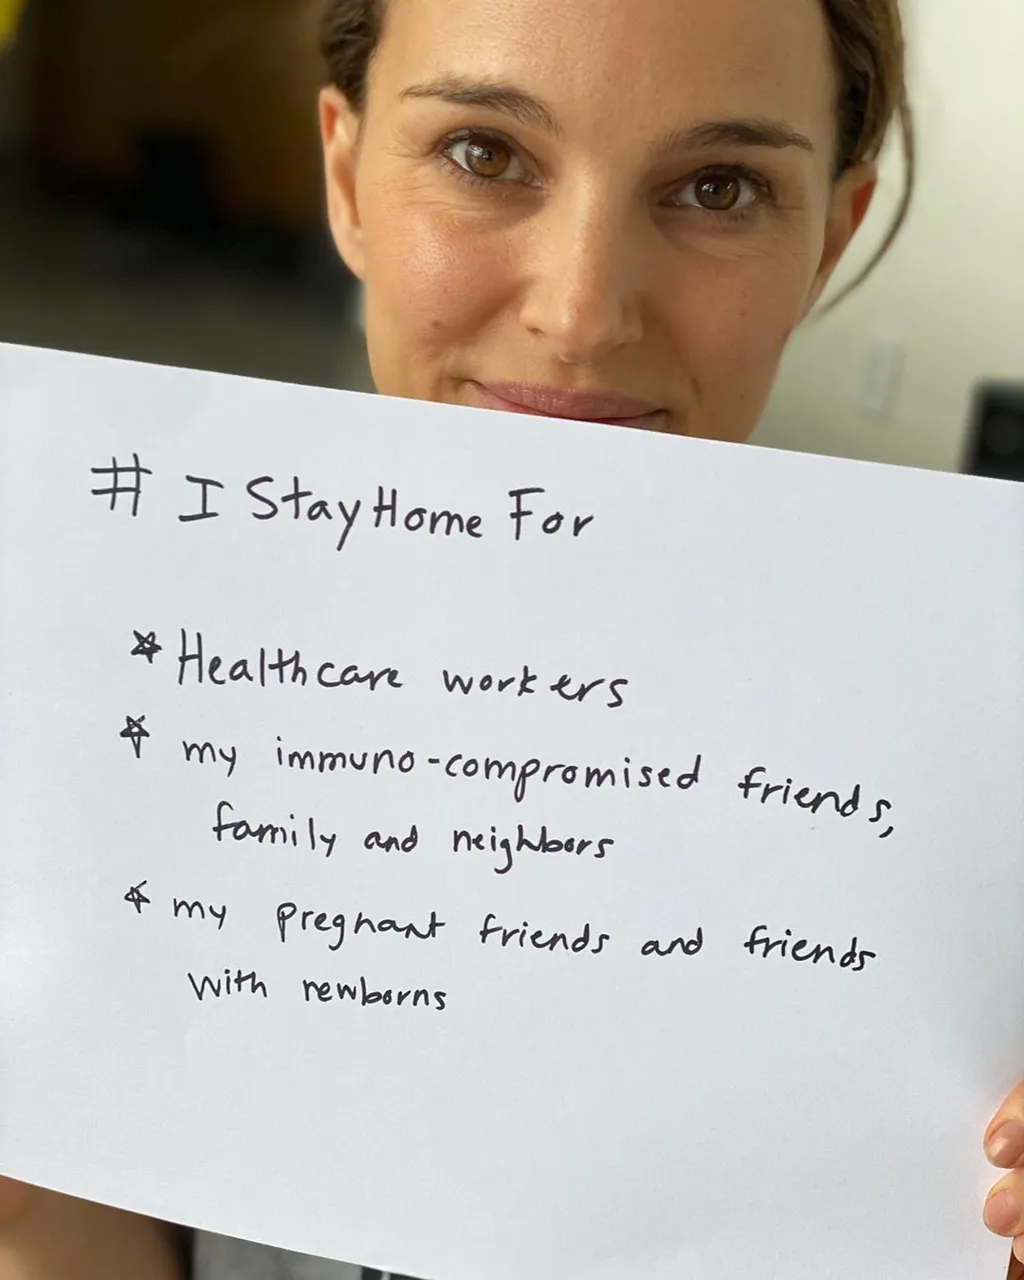 Natalie Portman is az egészségügyi dolgozókat támogatja, de immunhiányos barátaiért, családtagjaiért és szomszédaiért is cselekszik, csakúgy, mint terhes barátaiért és azokért, akik nemrég szültek 